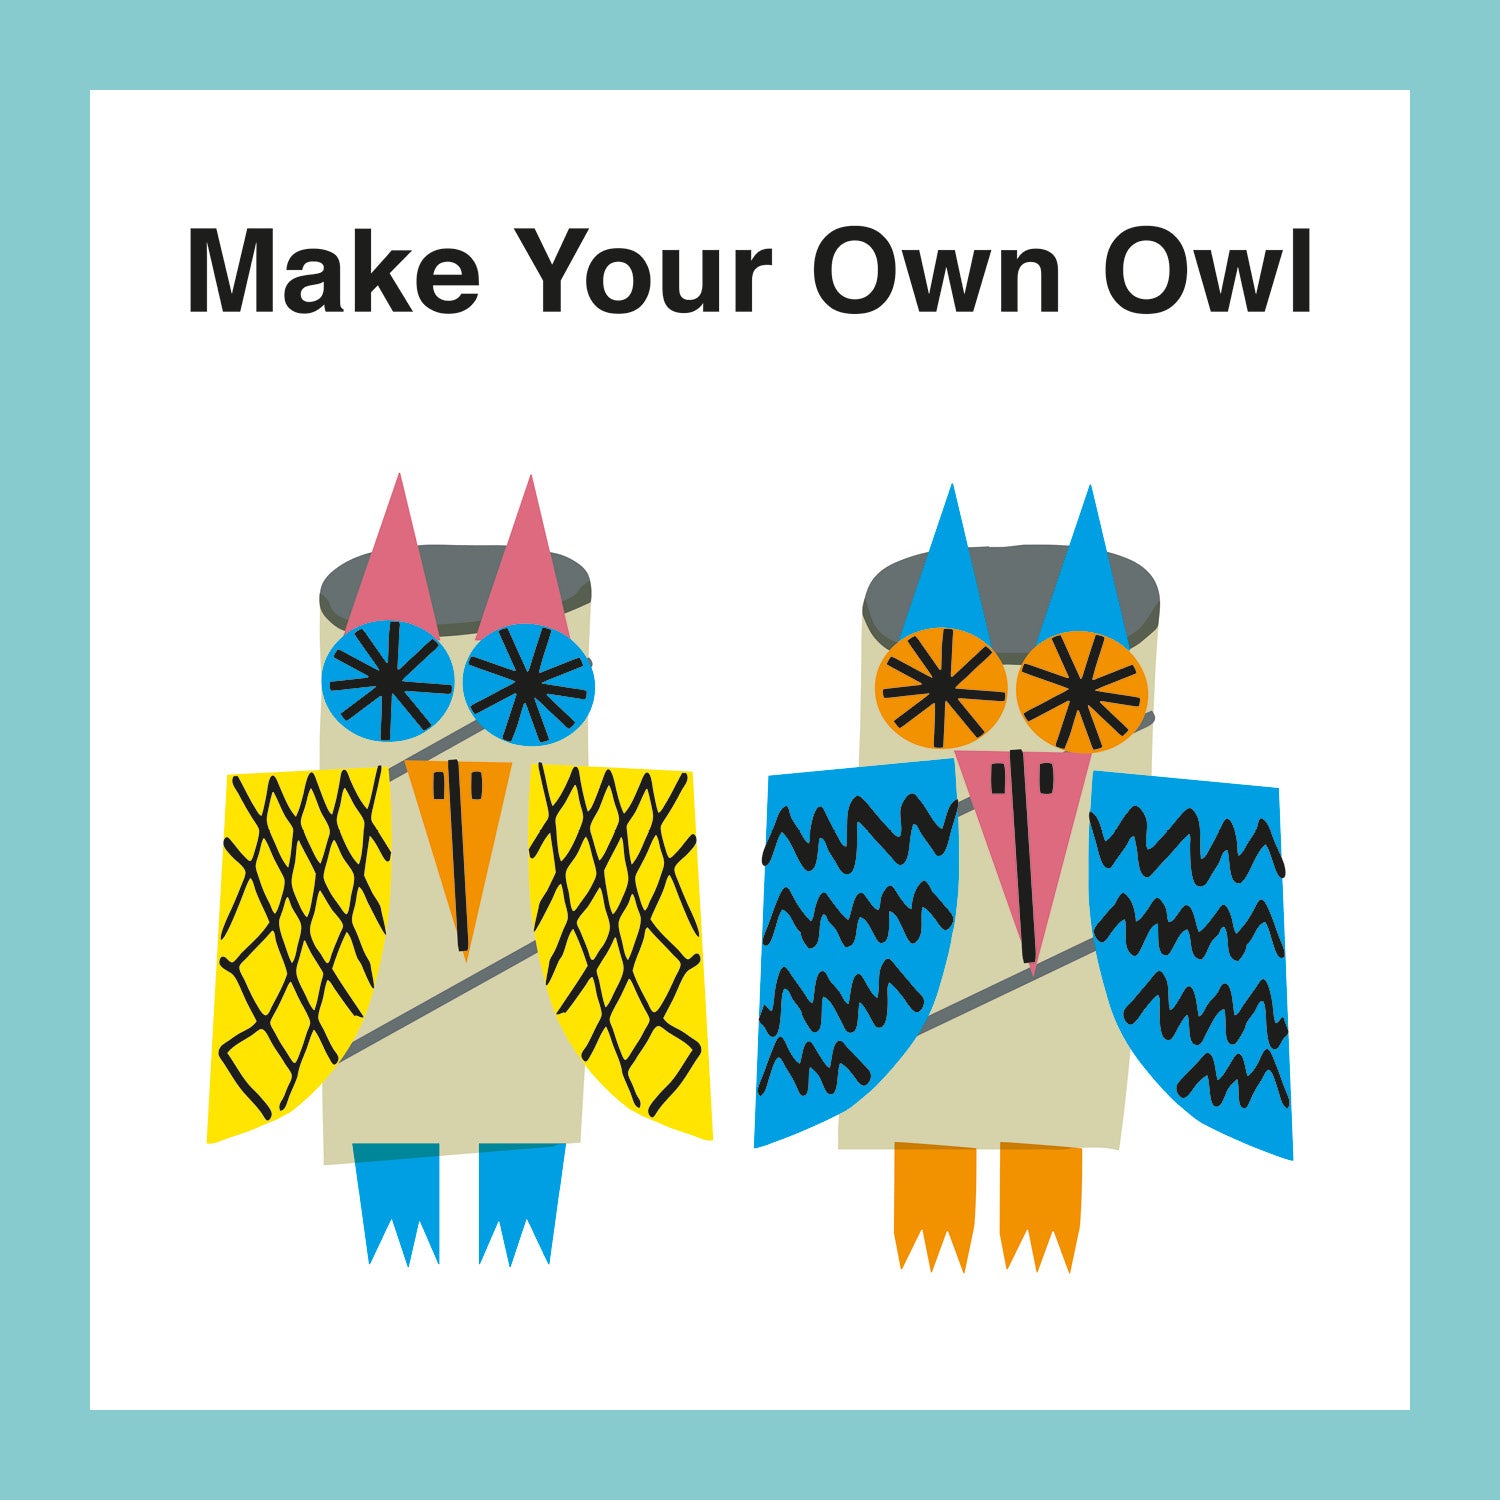 Make an Owl!